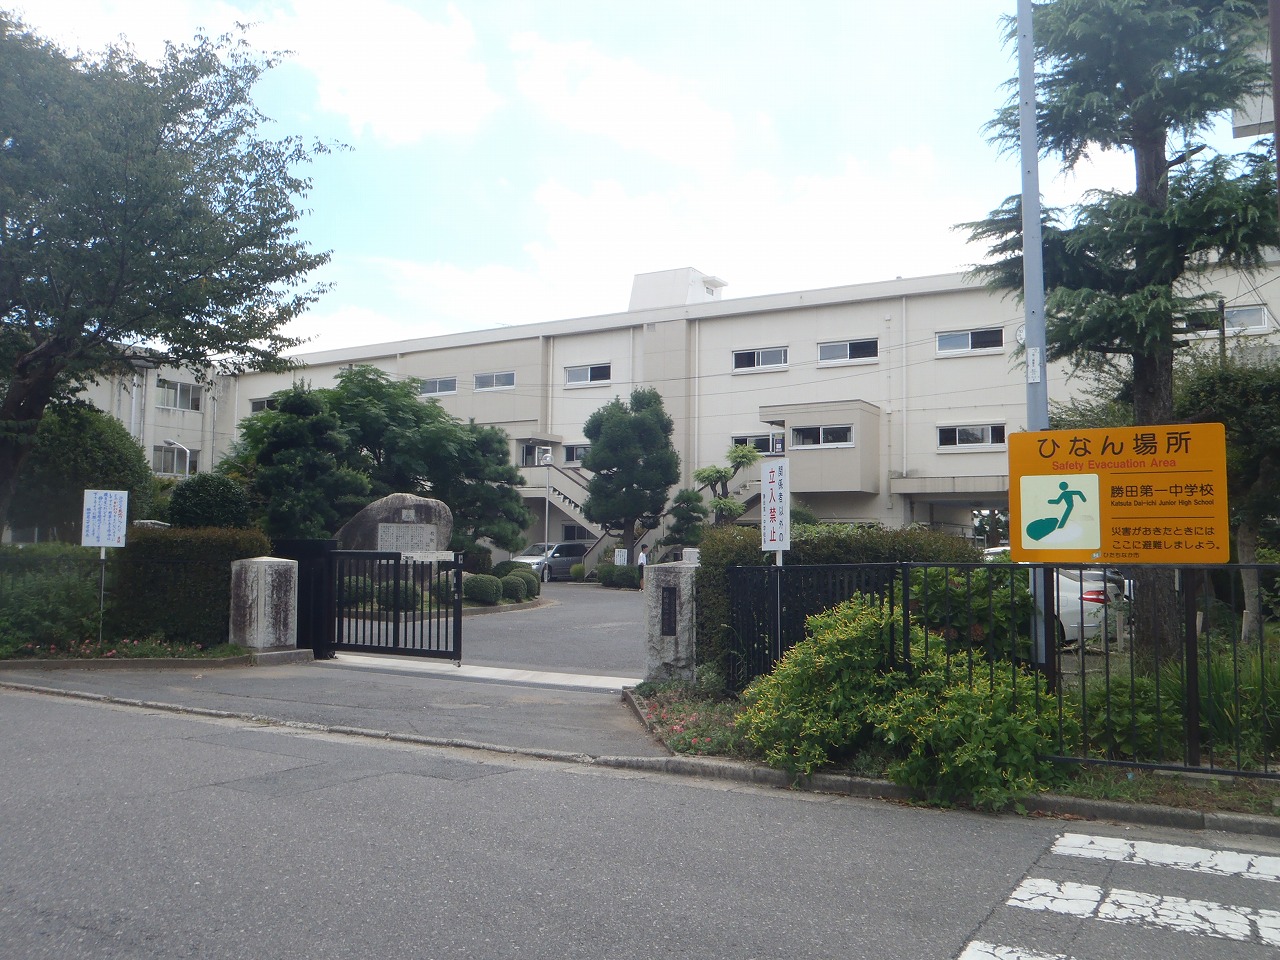 Junior high school. Hitachinaka Municipal Katsuta first junior high school (junior high school) up to 1090m